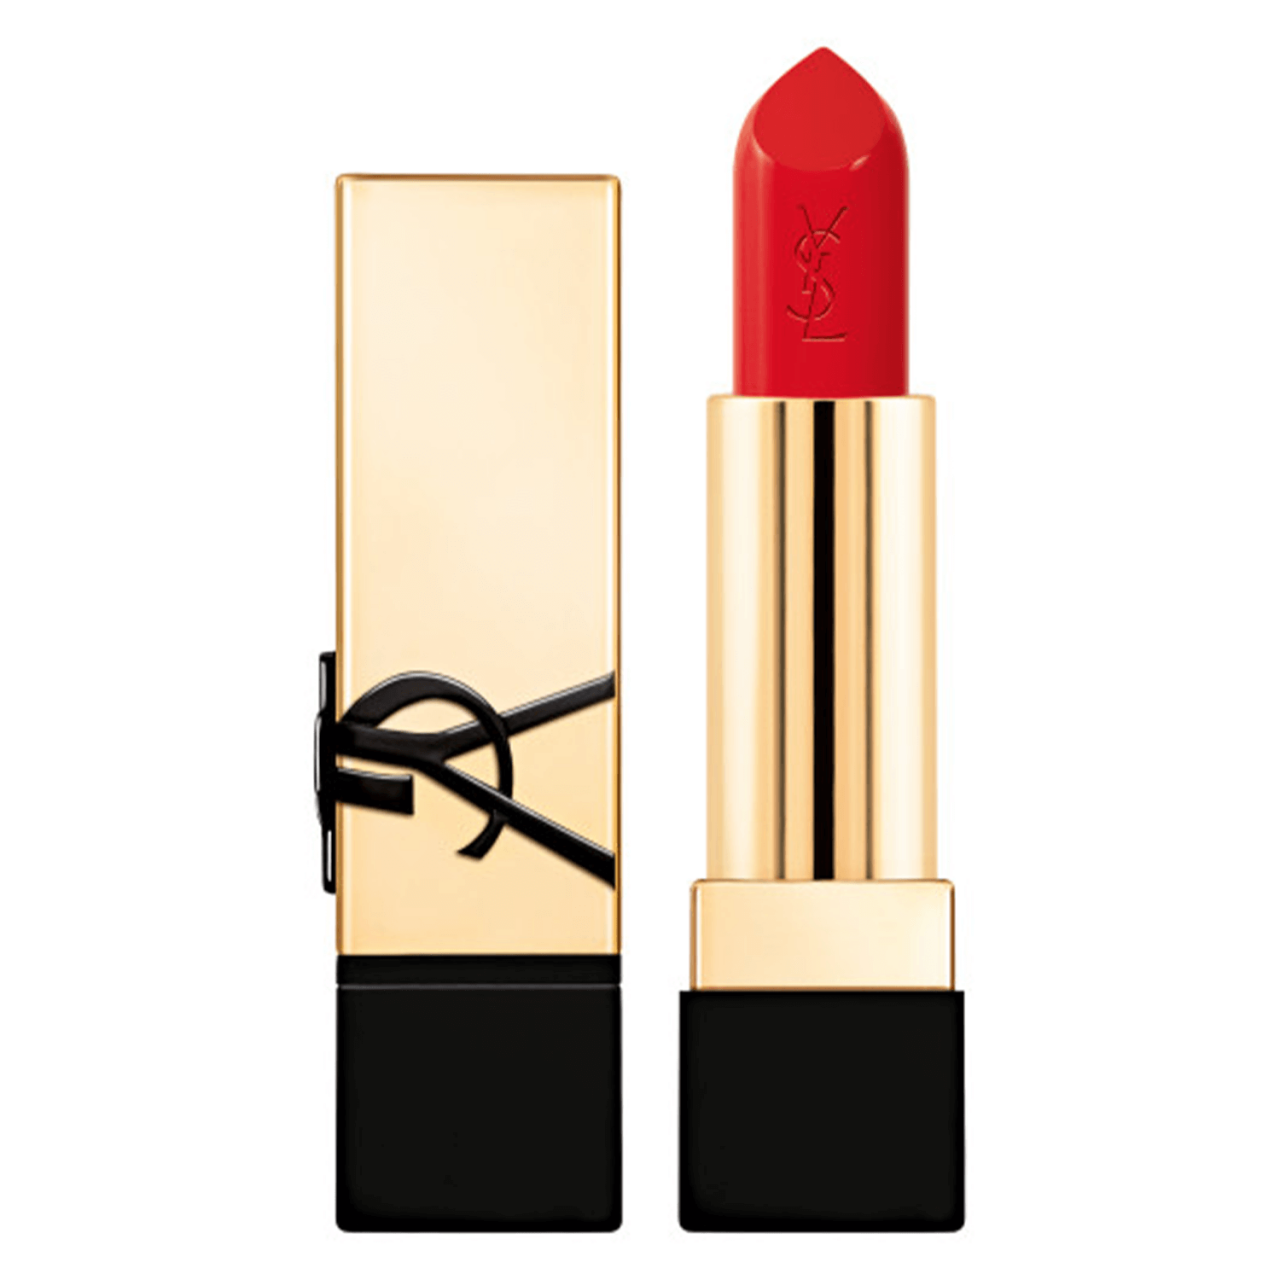 Rouge Pur Couture - Caring Satin Lipstick R1 Le Rouge von Yves Saint Laurent